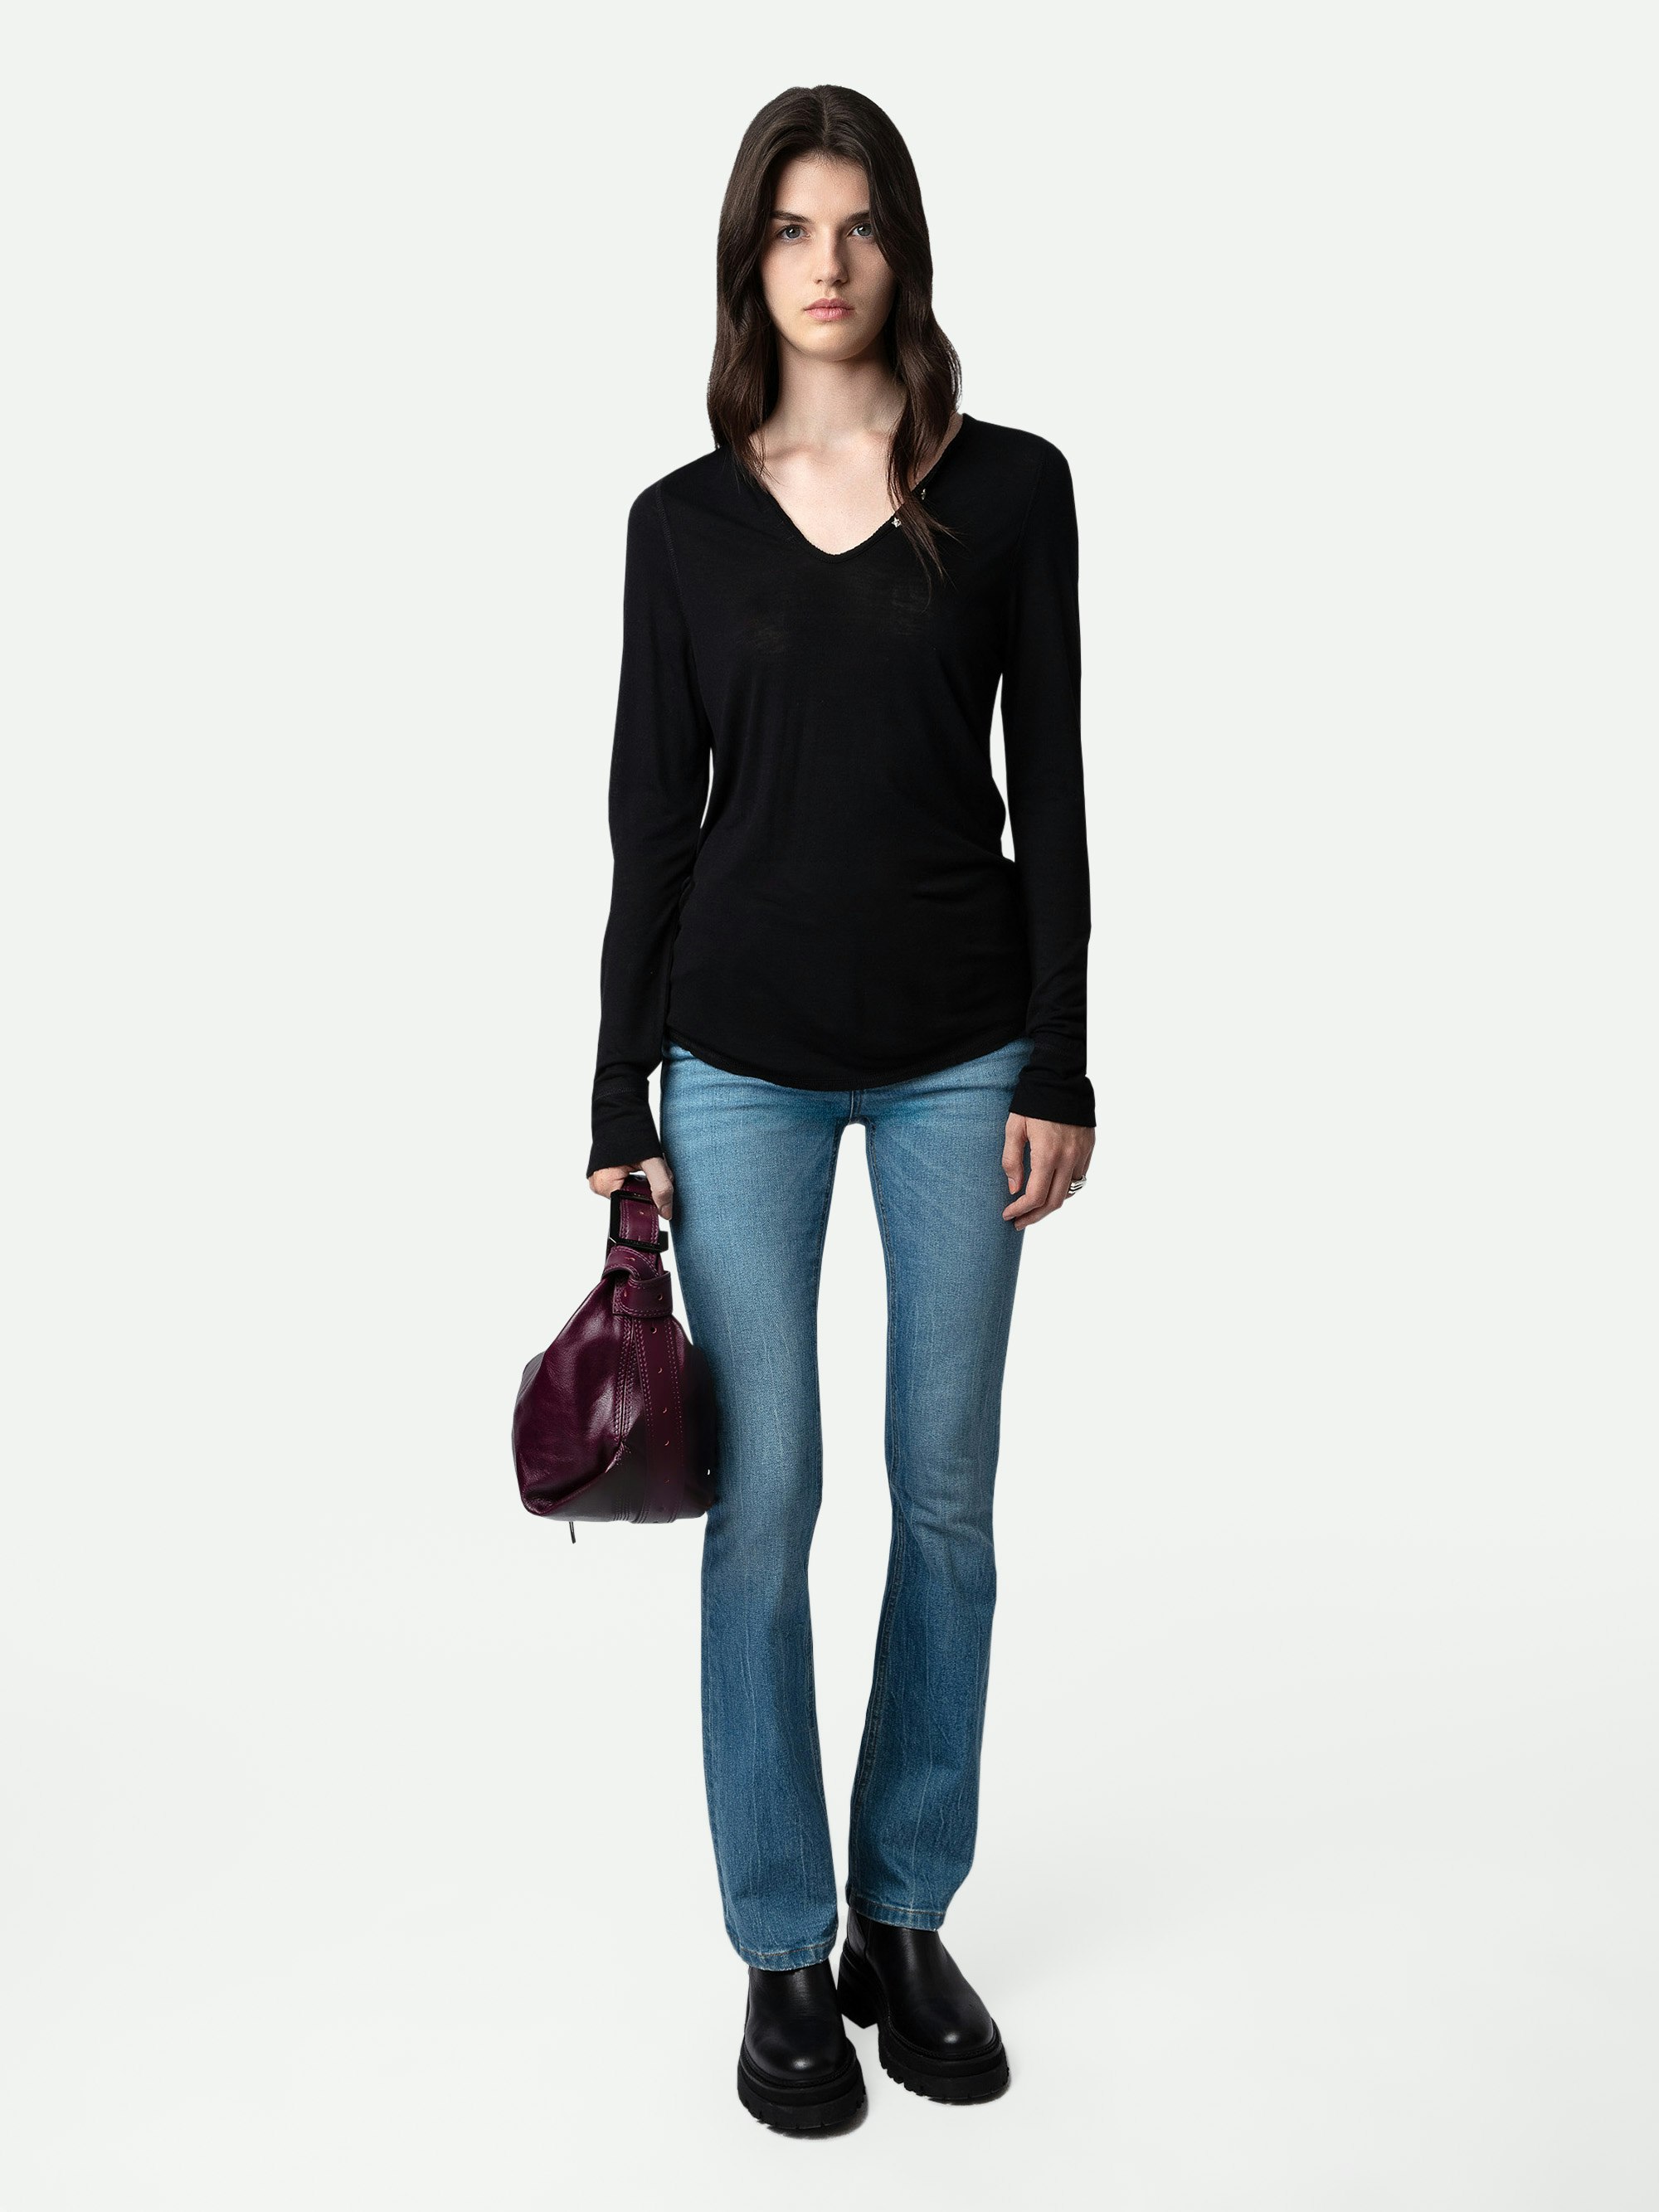 T-shirt Serafino Gioiello - T-shirt serafino nera da donna a maniche lunghe con bottoni gioiello a stella.